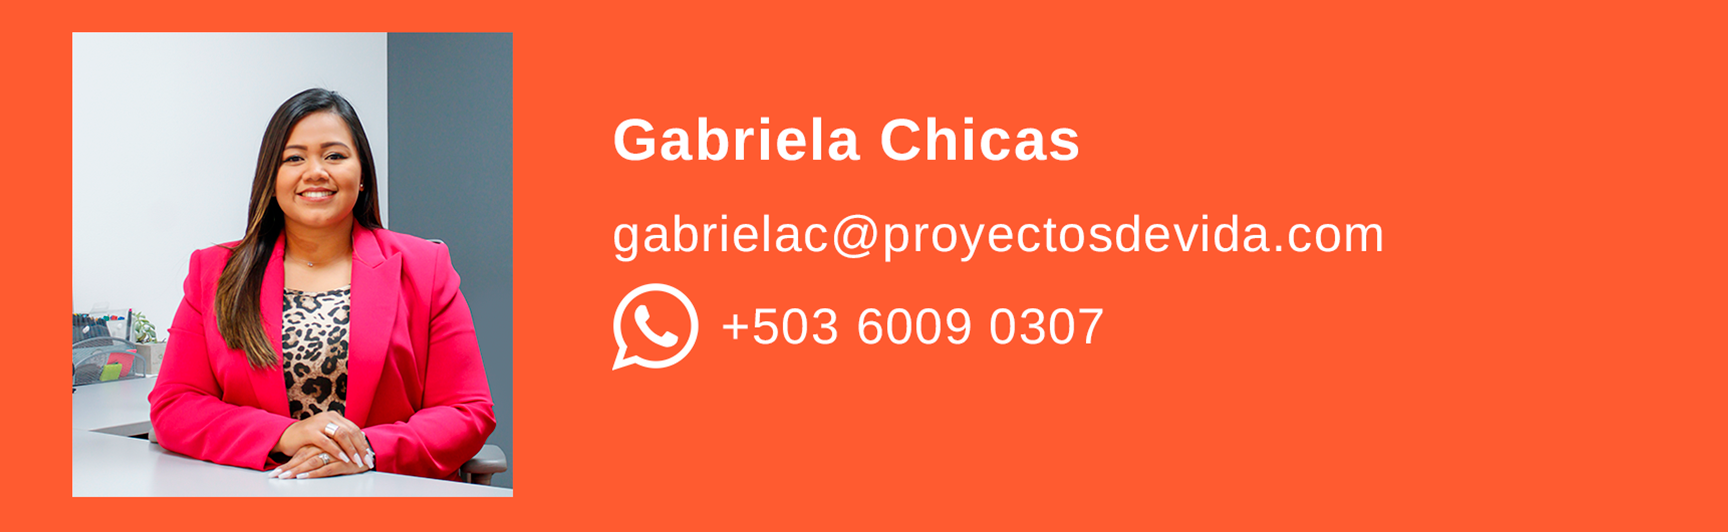 cintillo_gariela_chicas-1-1